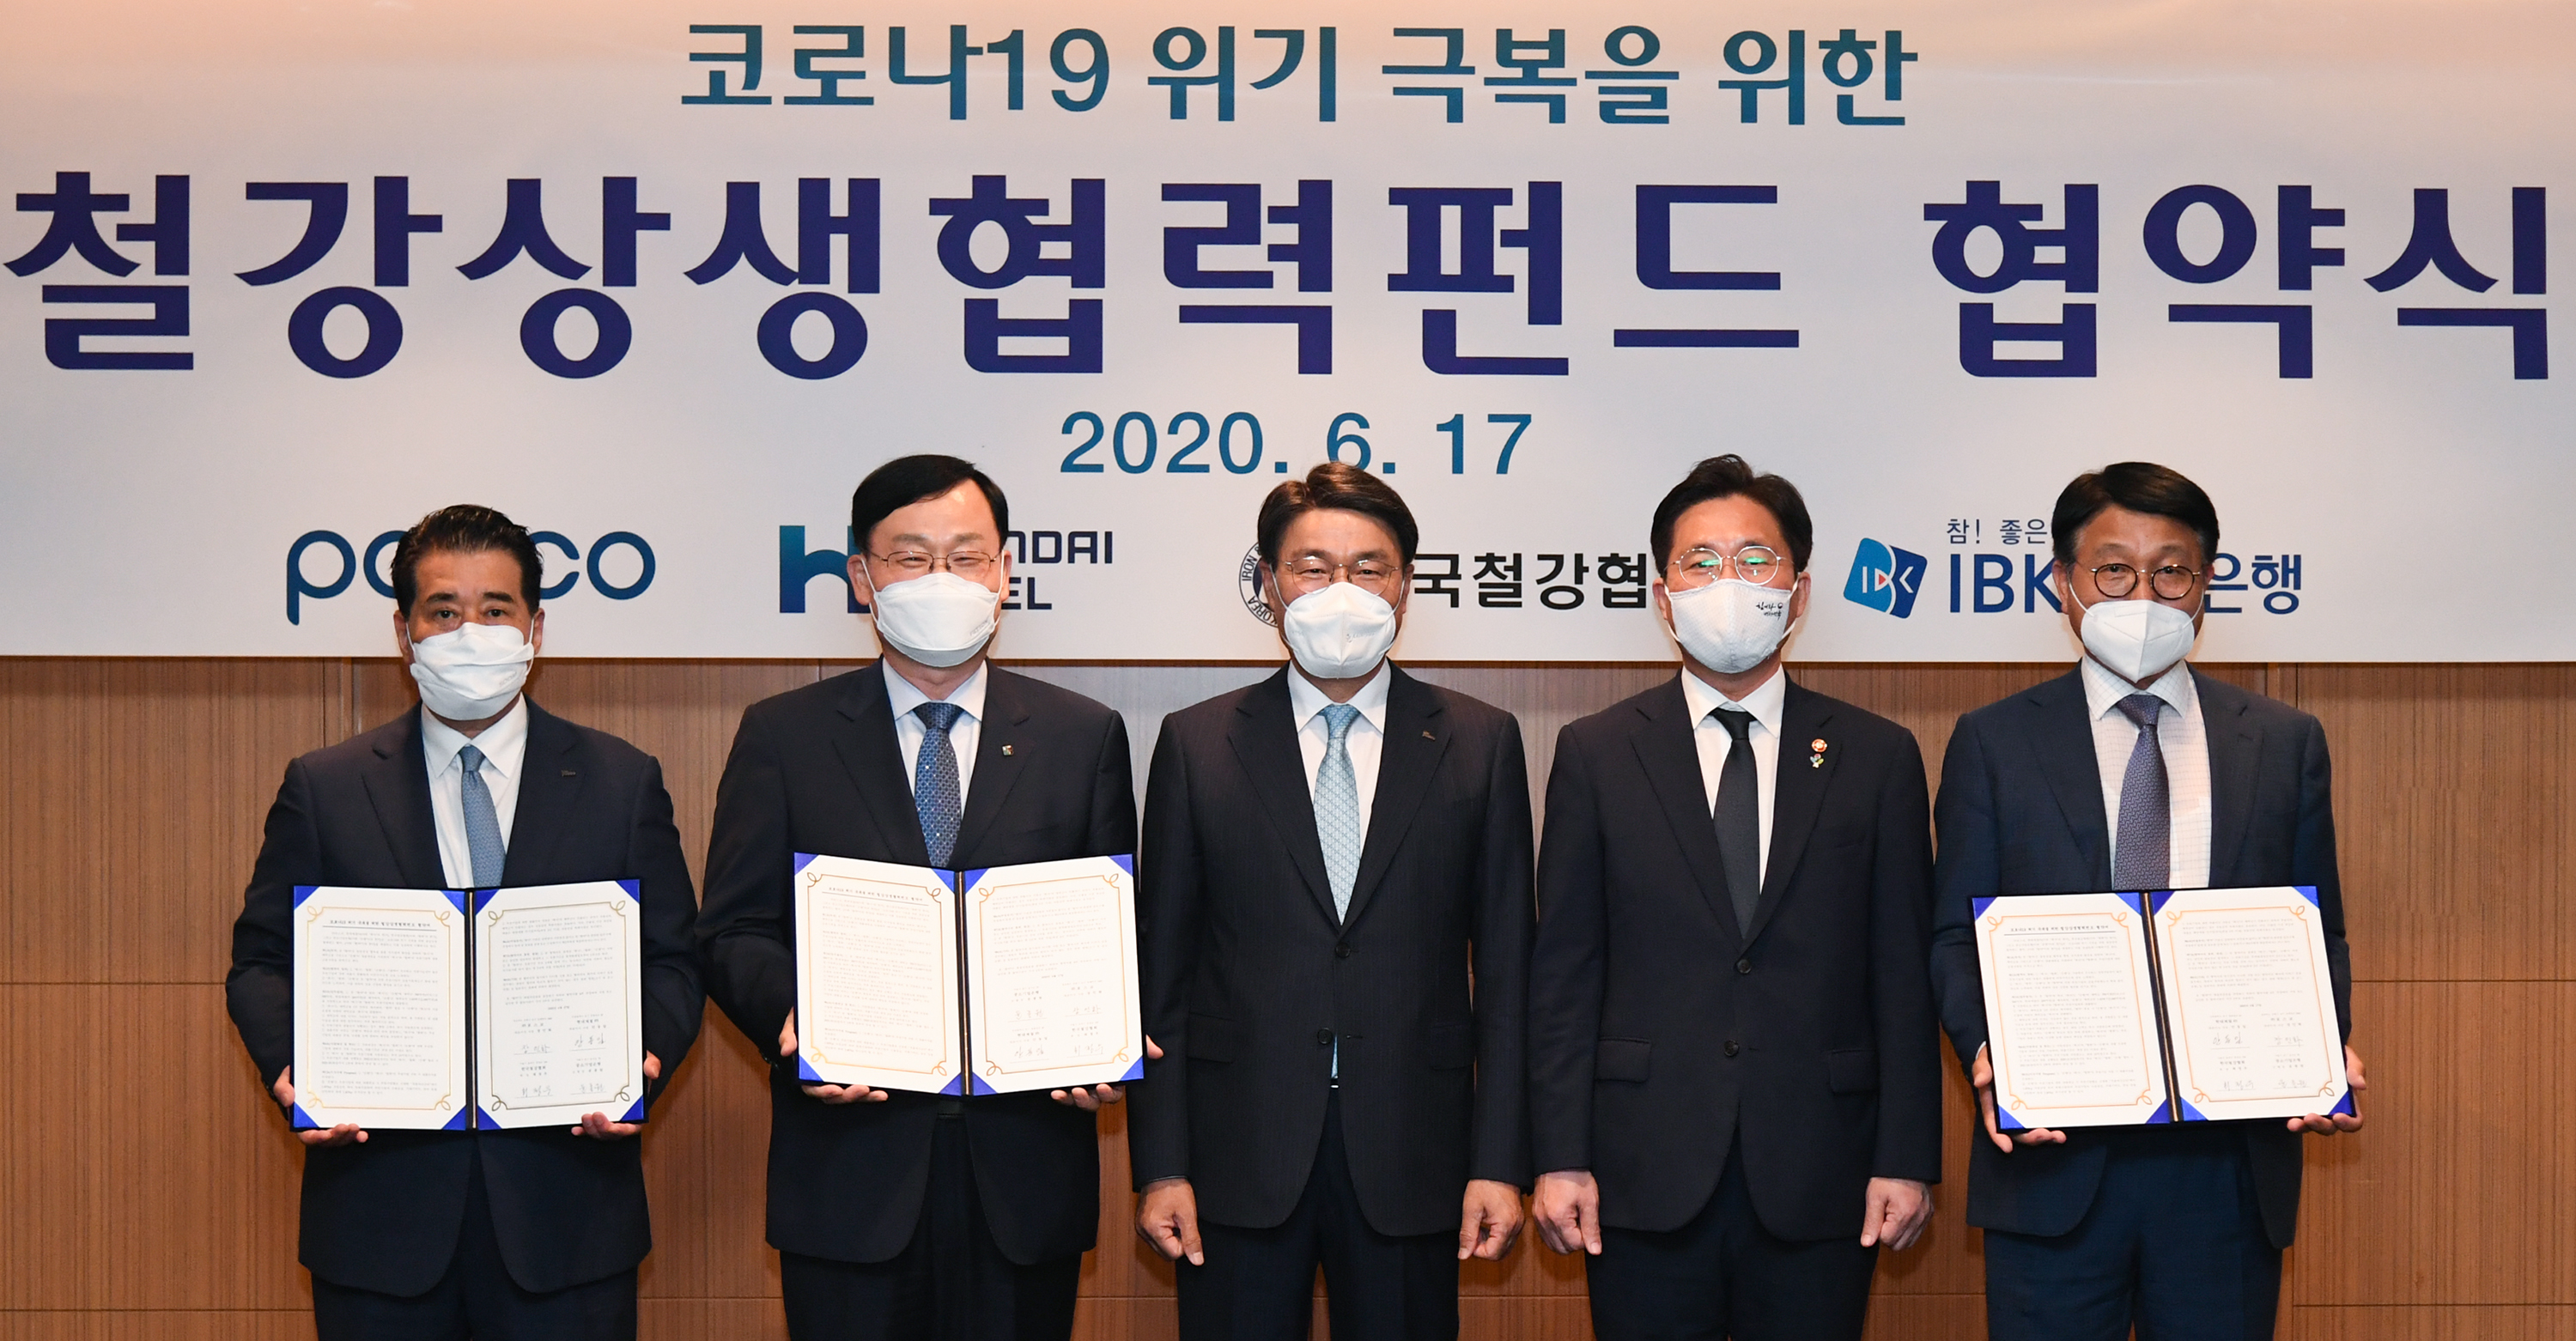  2020년 6월 17일 인터컨티넨탈 서울 코엑스에서 포스코, 현대제철, 한국철강협회, IBK기업은행이 코로나19위기 극복을 위한 철강상생협력펀드 협약을 맺었다. 